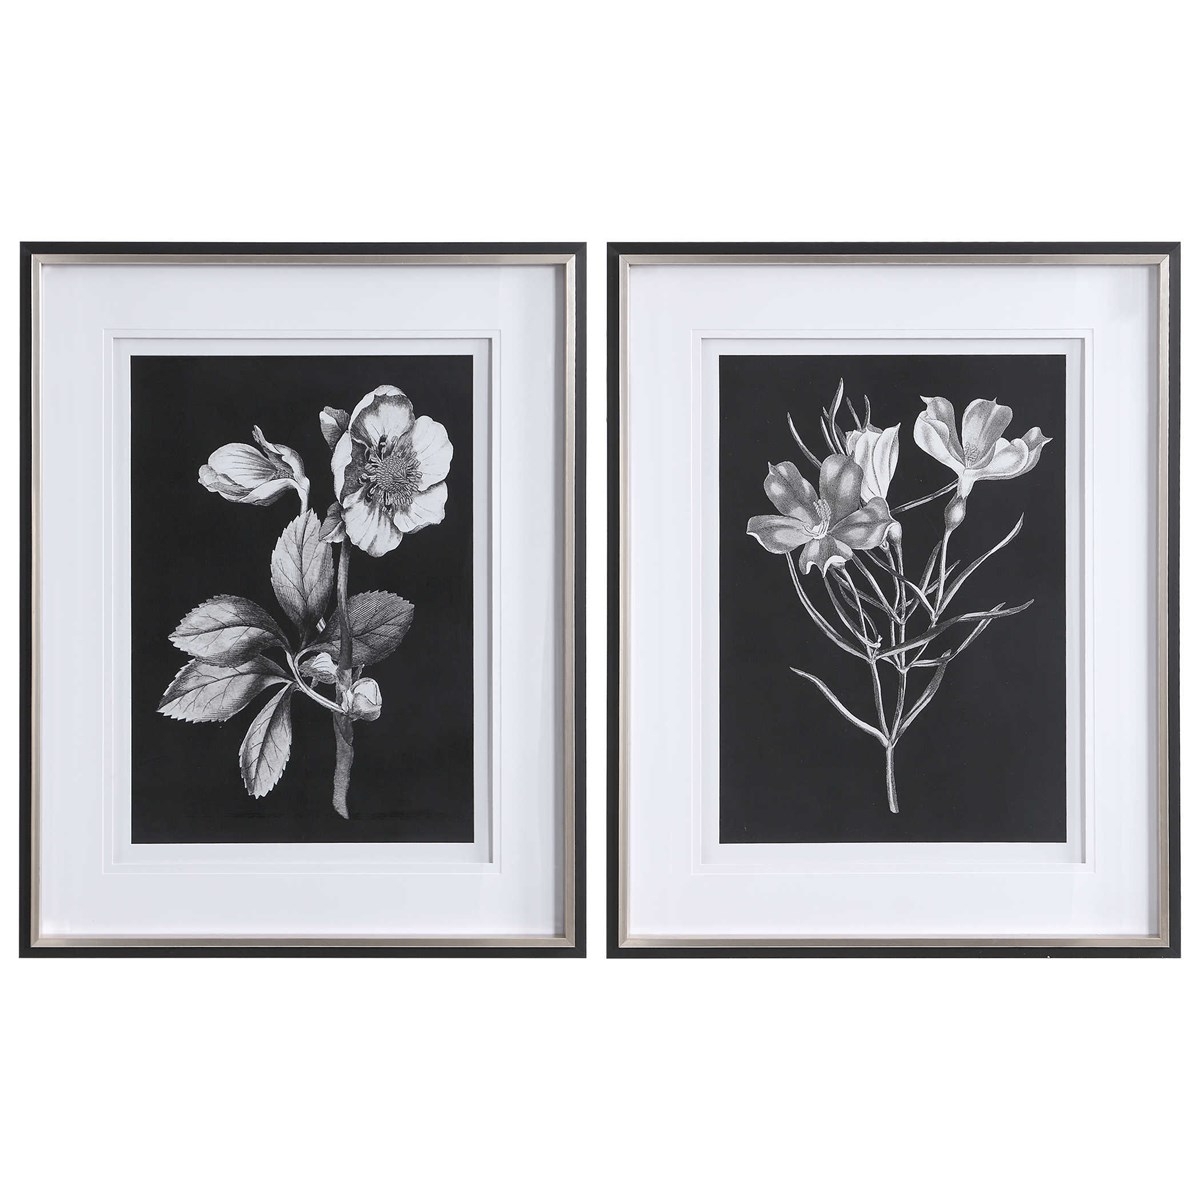 BLACK & WHITE FLOWERS FRAMED PRINTS, S/2 - Image 0